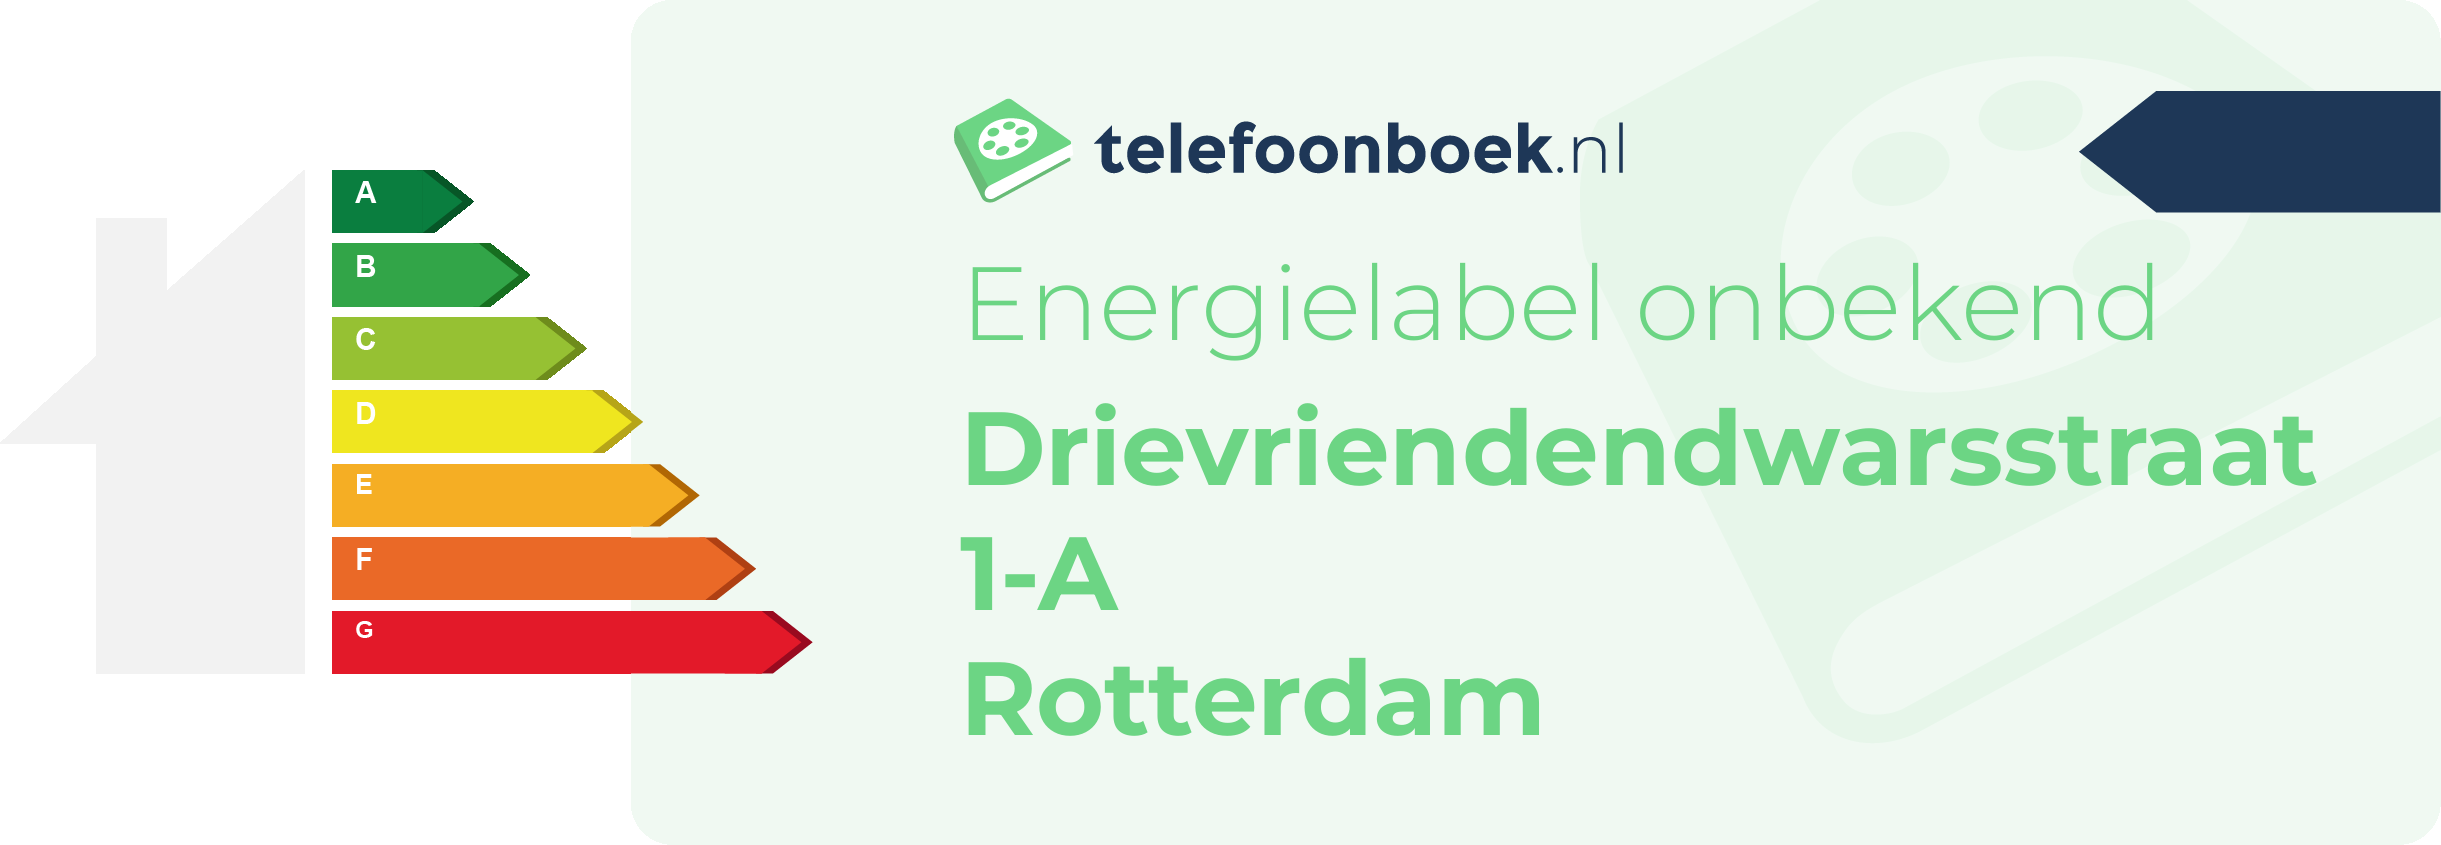 Energielabel Drievriendendwarsstraat 1-A Rotterdam